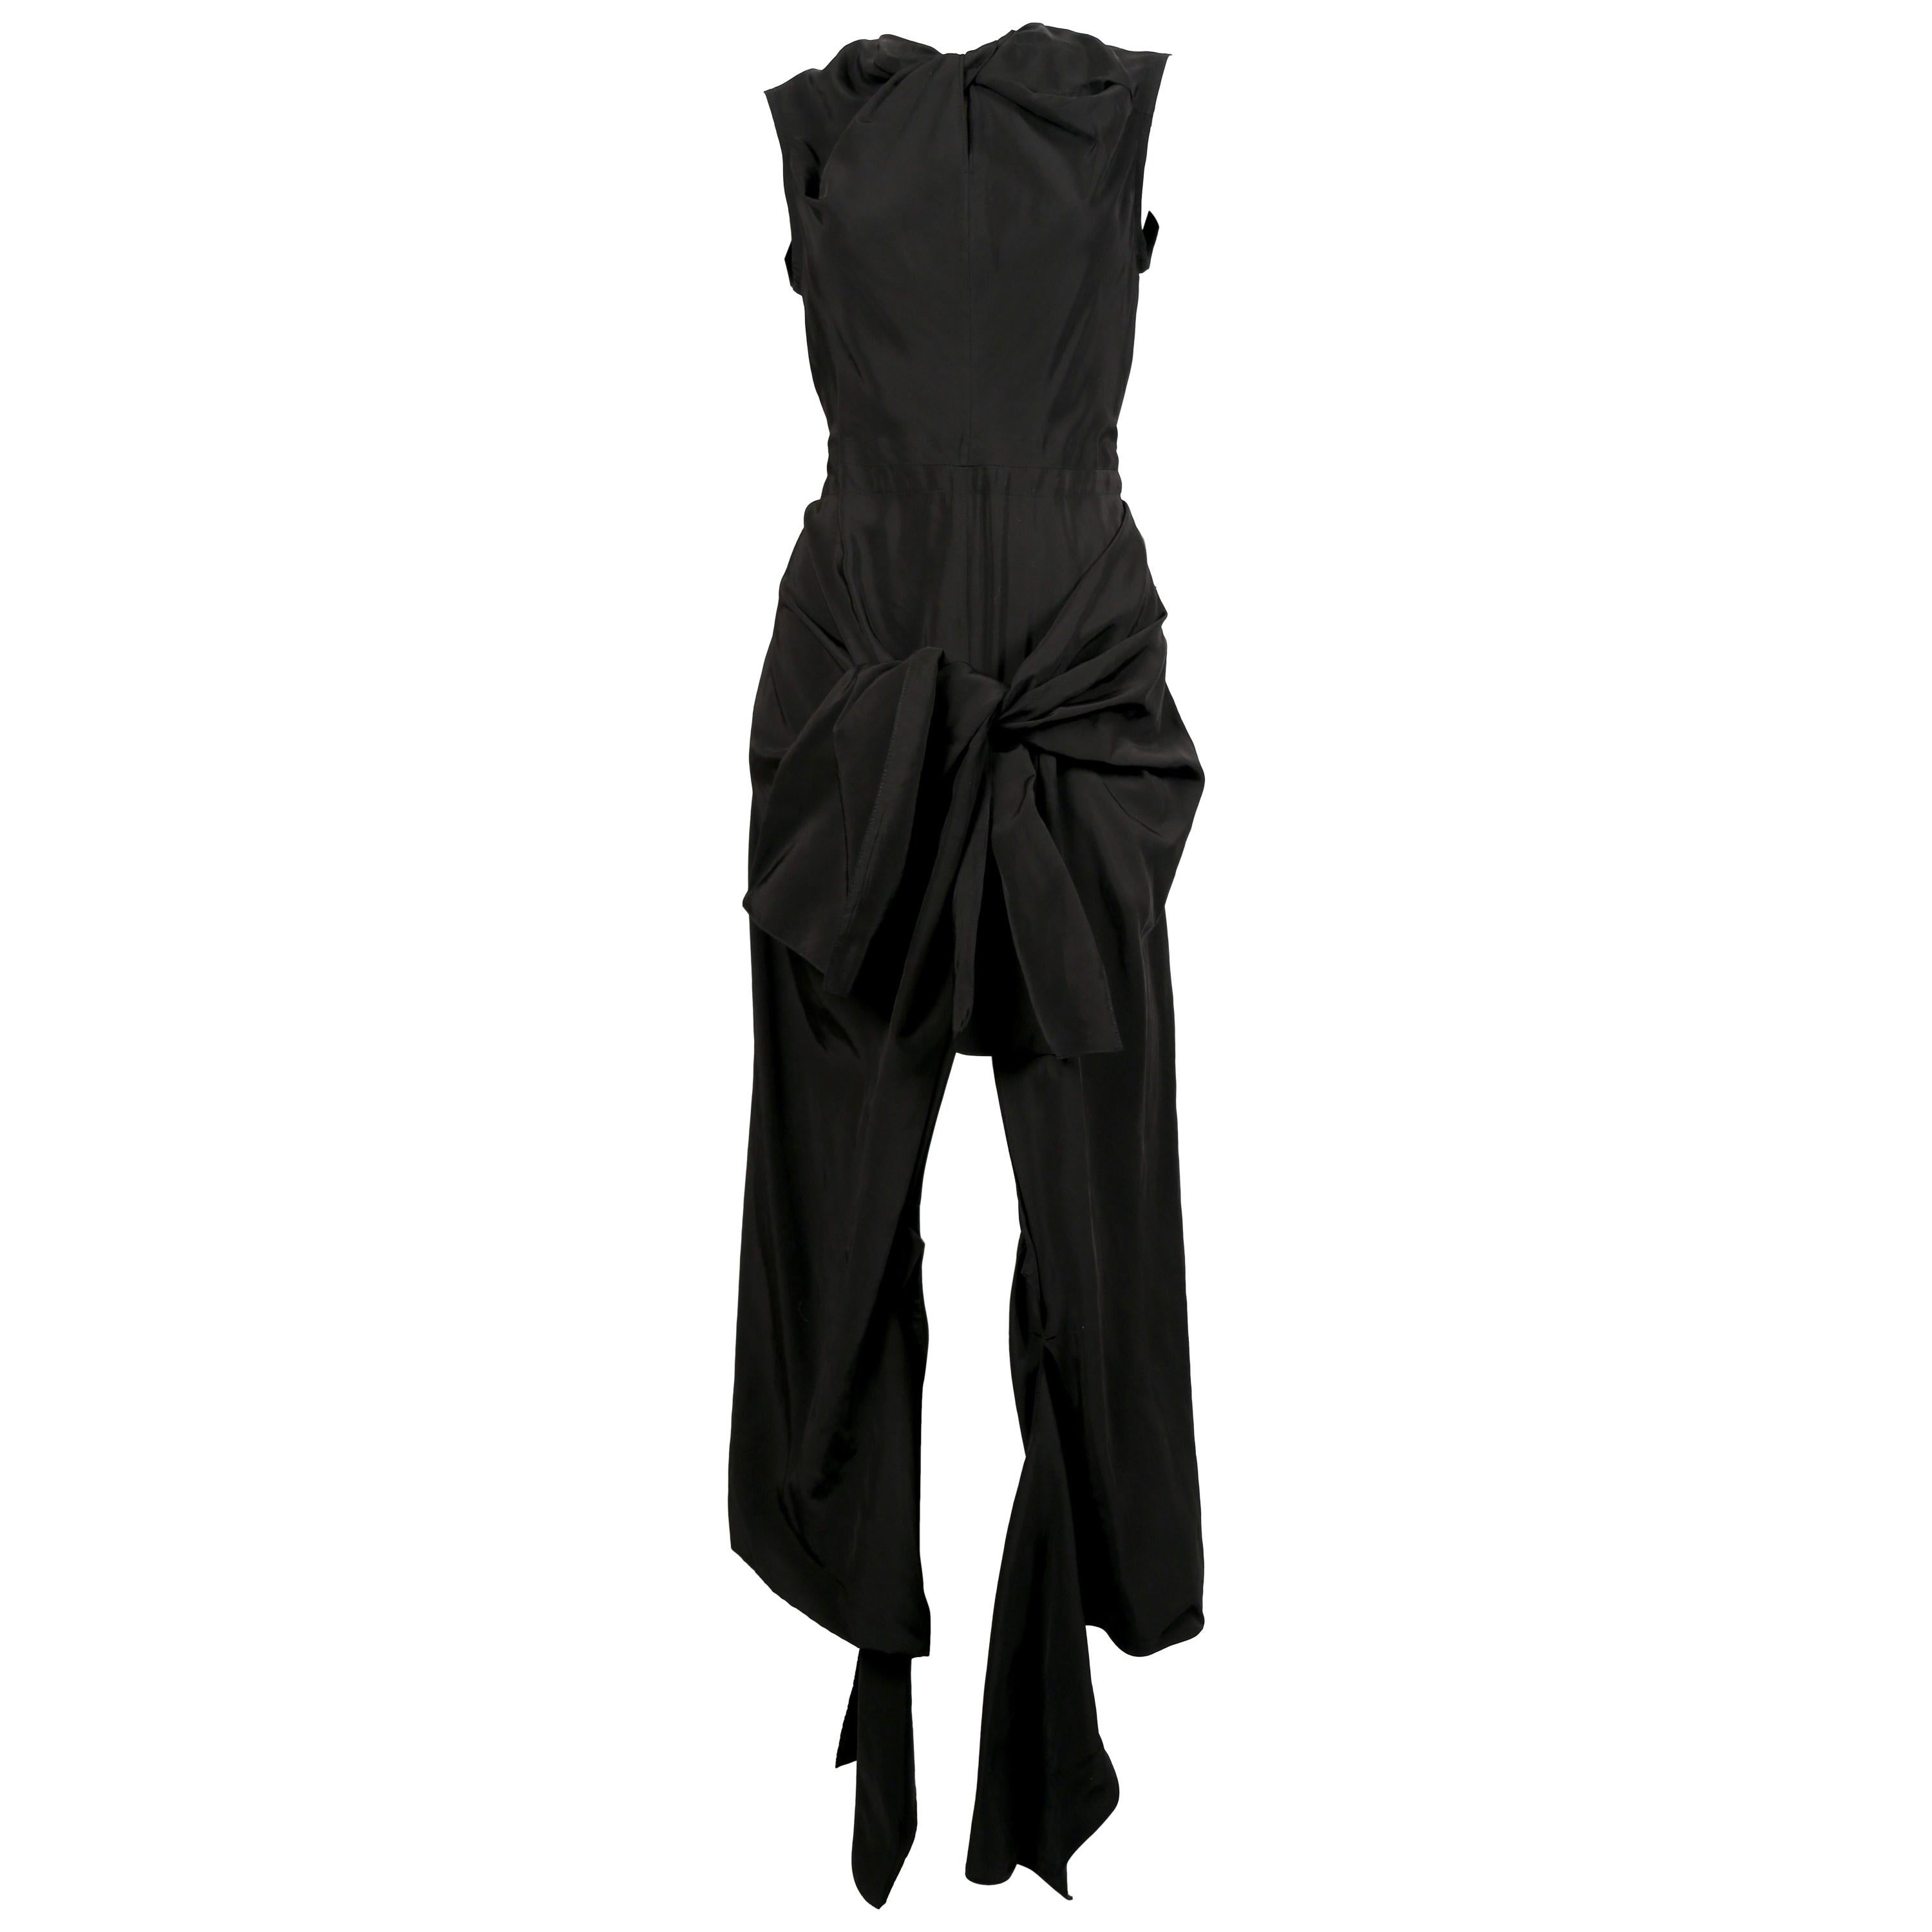 Neues schwarzes CELINE by PHOEBE PHILO Kleid mit Krawatten und ausgeschnittenem Rückenausschnitt im Angebot